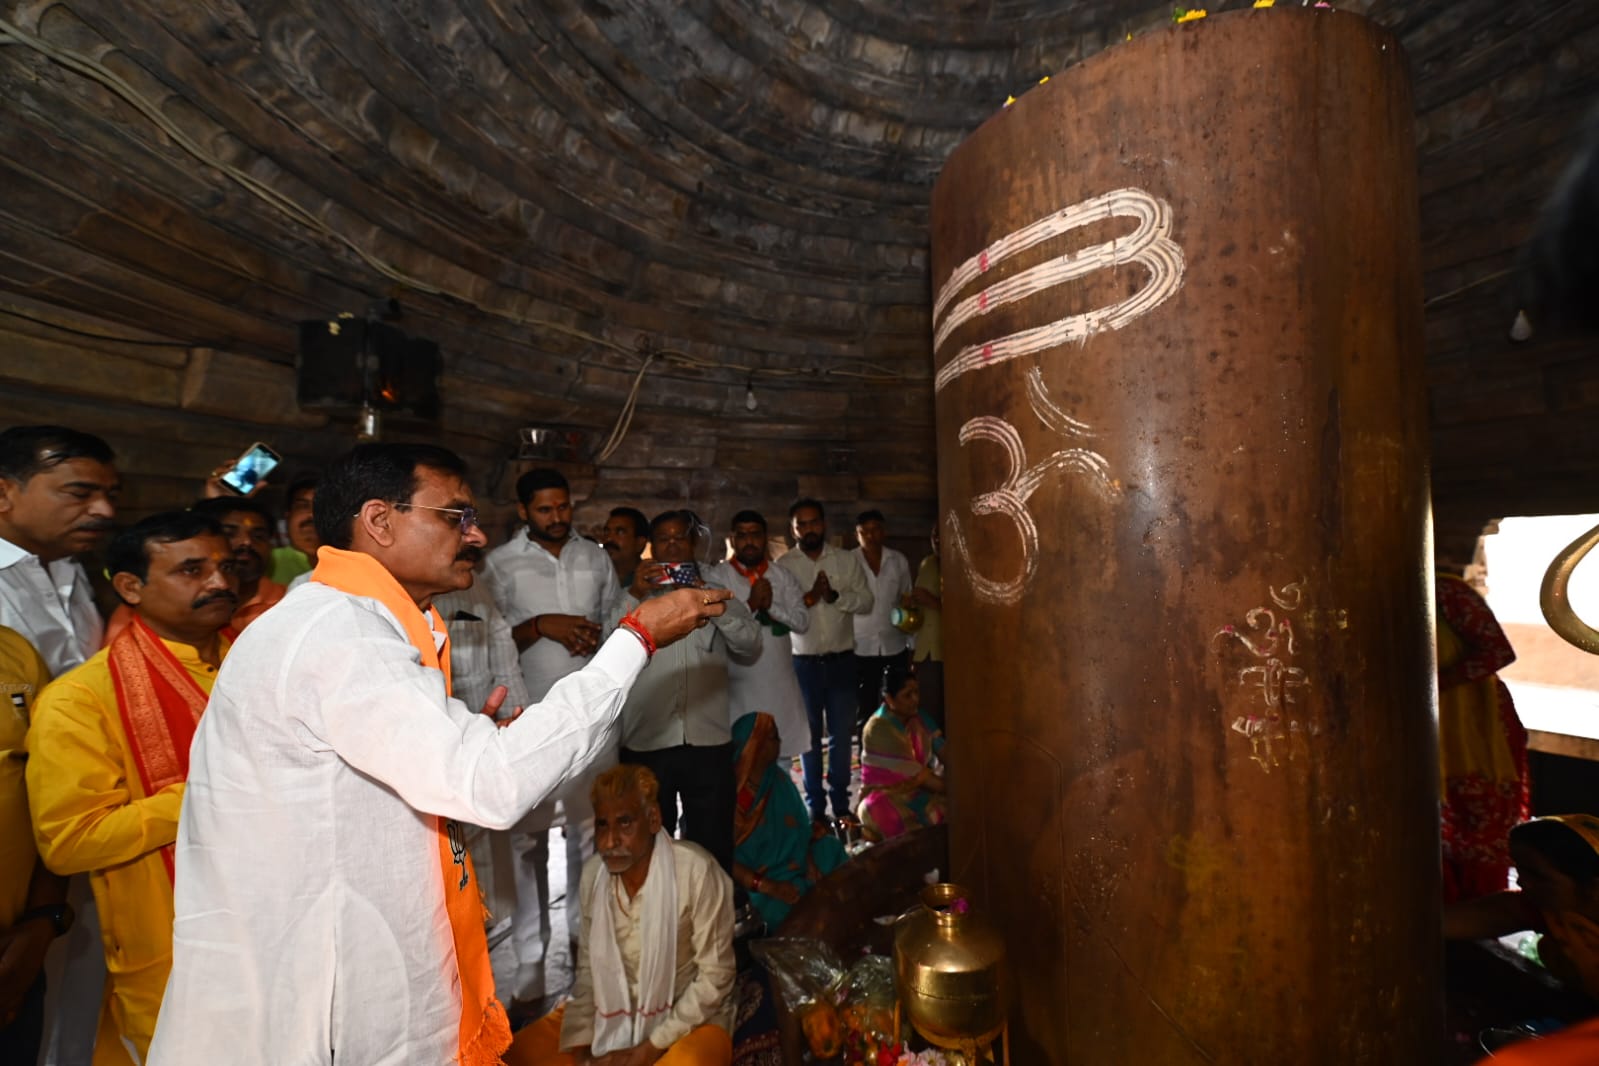 भाजपा प्रदेश अध्यक्ष विष्णुदत्त शर्मा ने मंदिर में पूजन-अर्चन कर,प्रदेश वासियों की सुख-समृद्धि की कामना की